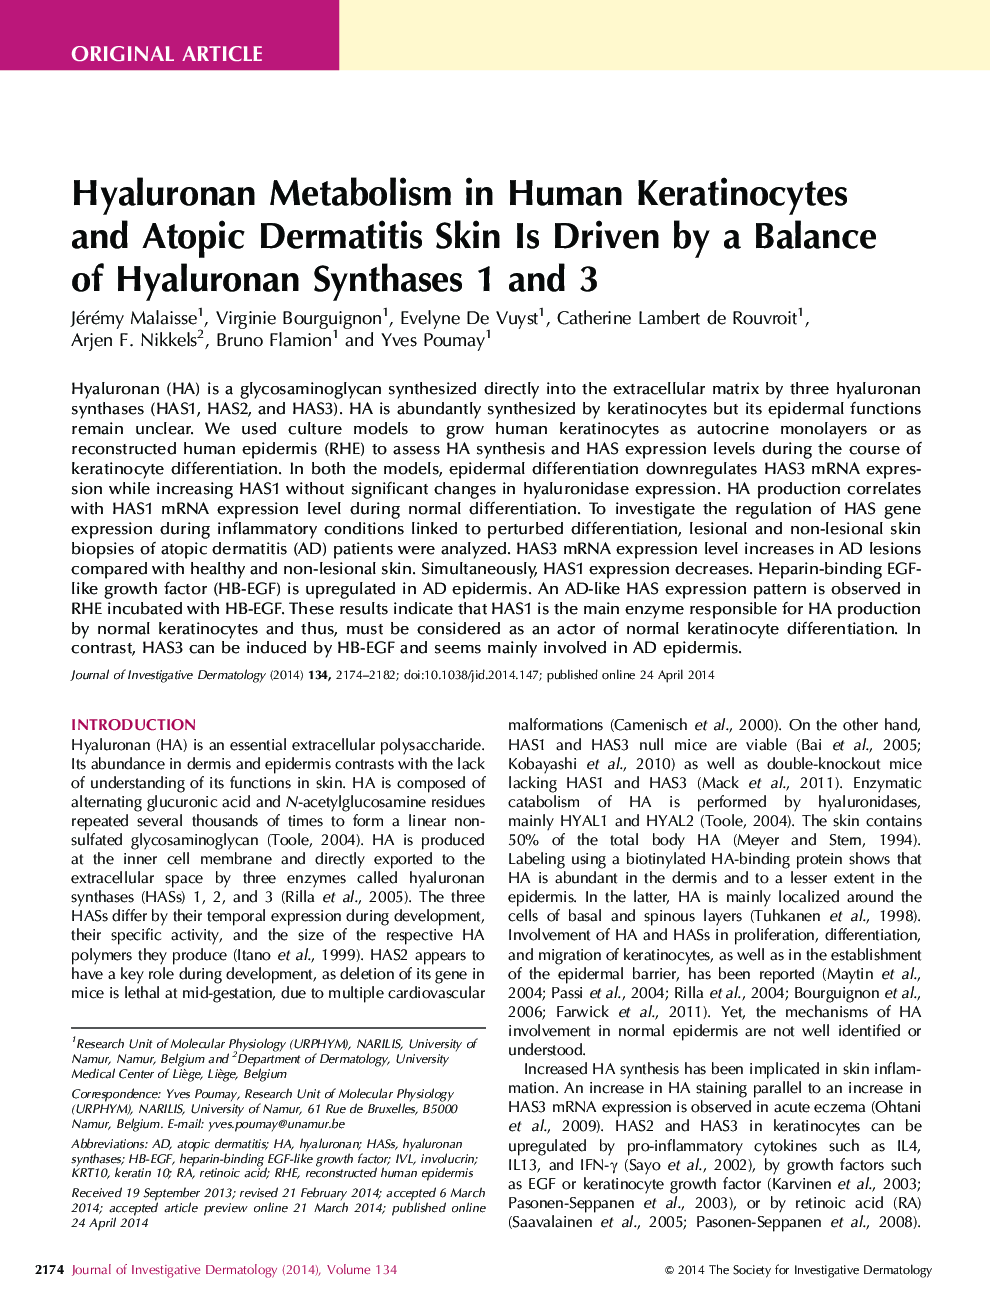 متابولیسم اصل هیدالورونان در کراتینوسیت های انسانی و پوست درماتیت آتوپیک توسط تعادل هیالورونان سنتز 1 و 3 رانده می شود 